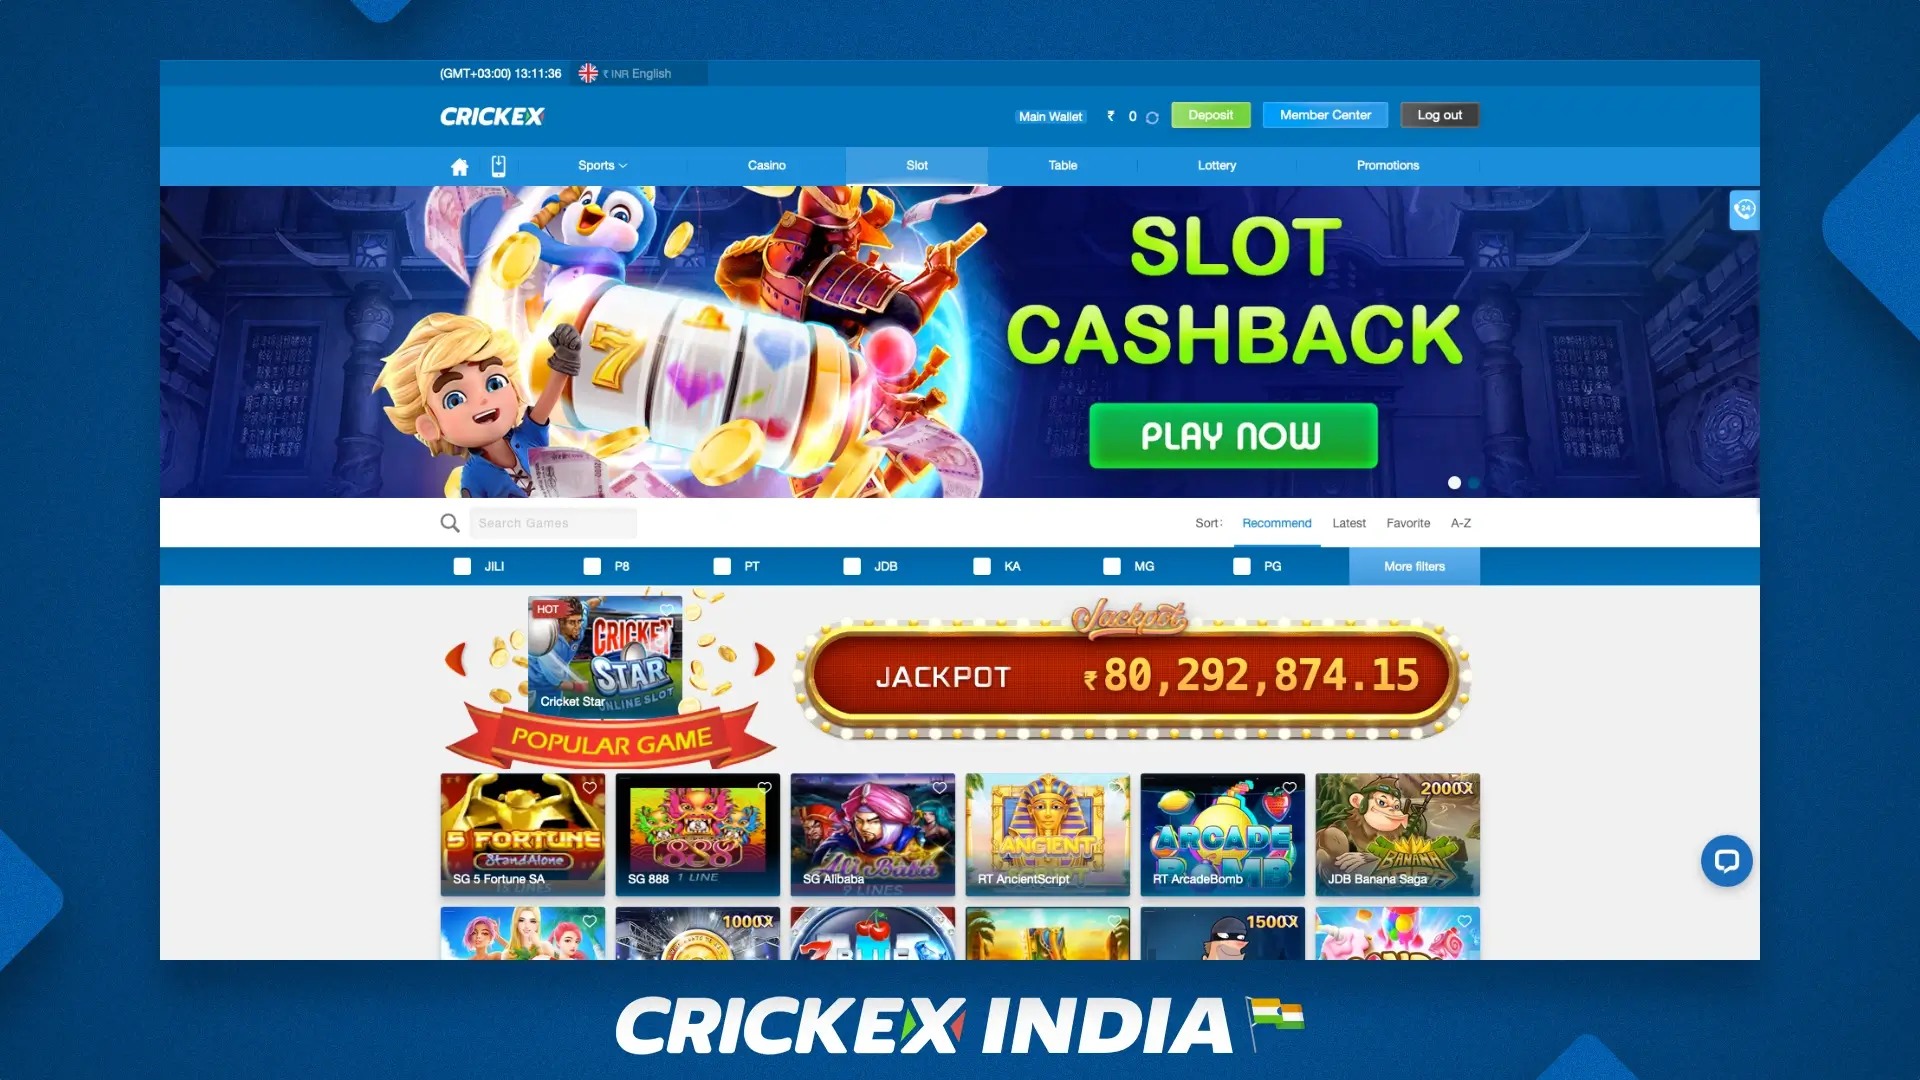 भारत के खिलाड़ियों के लिए Crickex जुआ मंच के प्रमुख लाभ